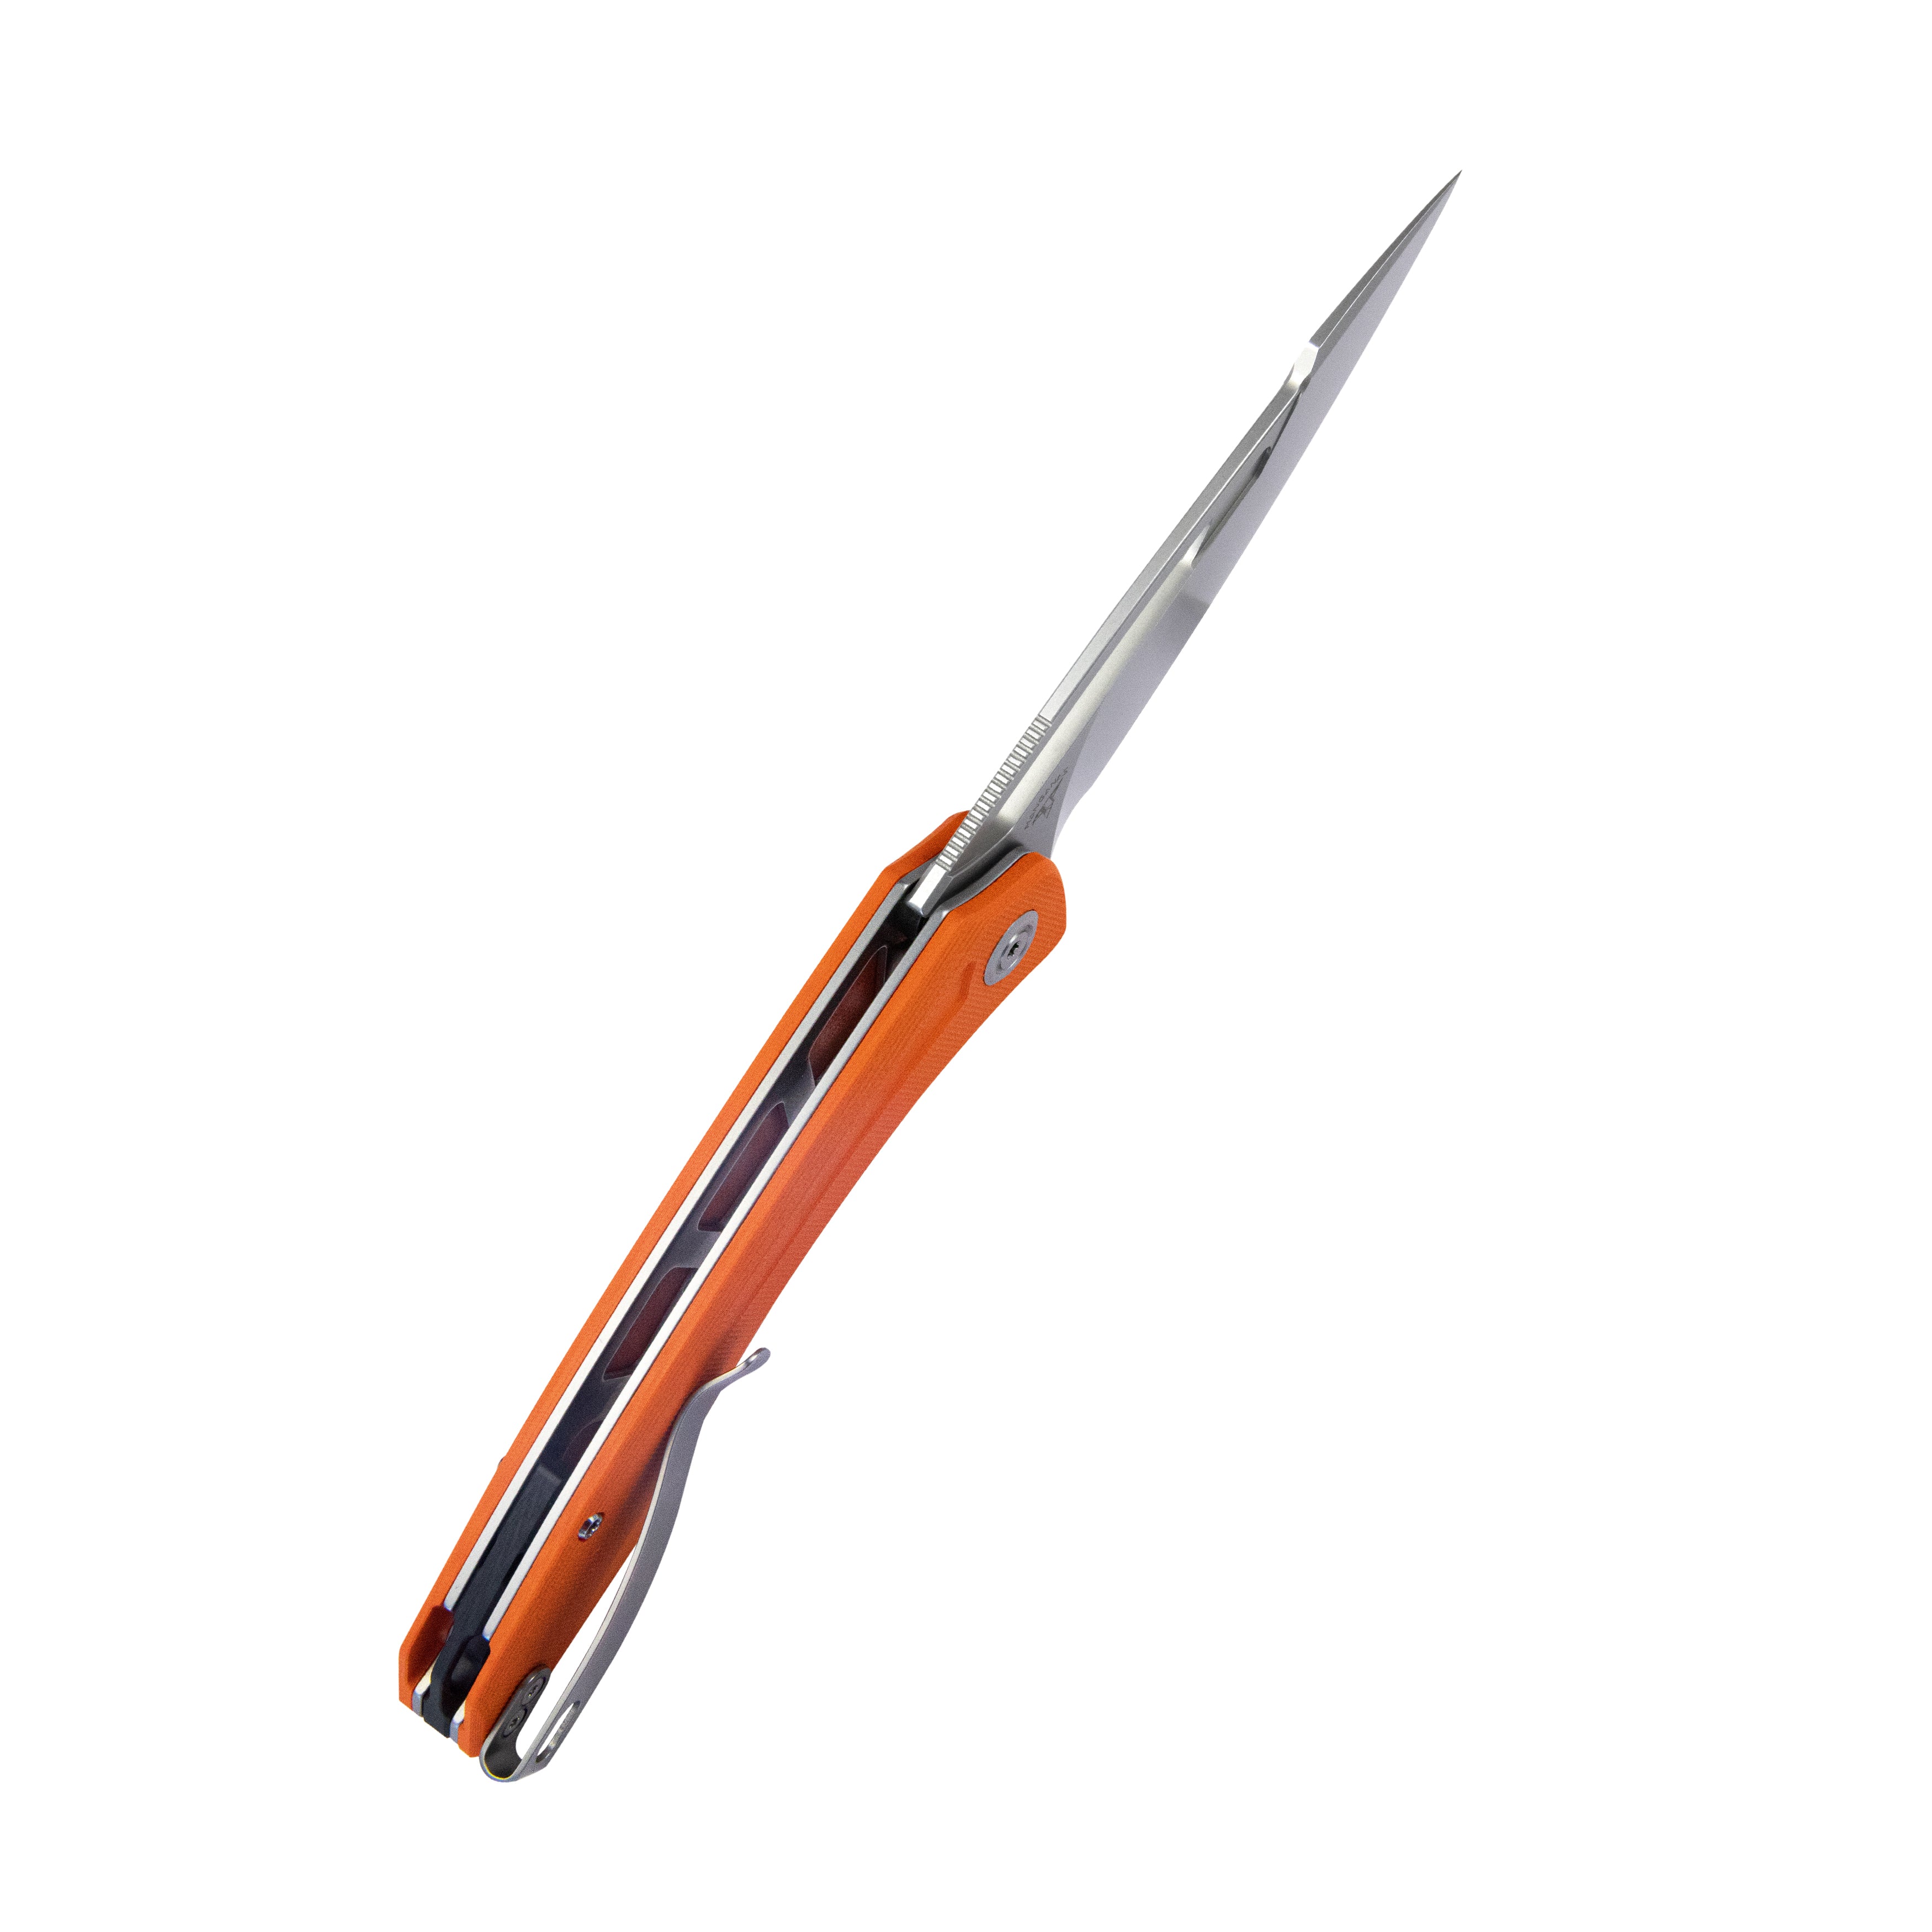 Kubey Merced Folding Knife 3.46" Beadblasted AUS-10 Blade With Durable Orange G10 Handle Reliable Tactical Pocket Knife KU345B